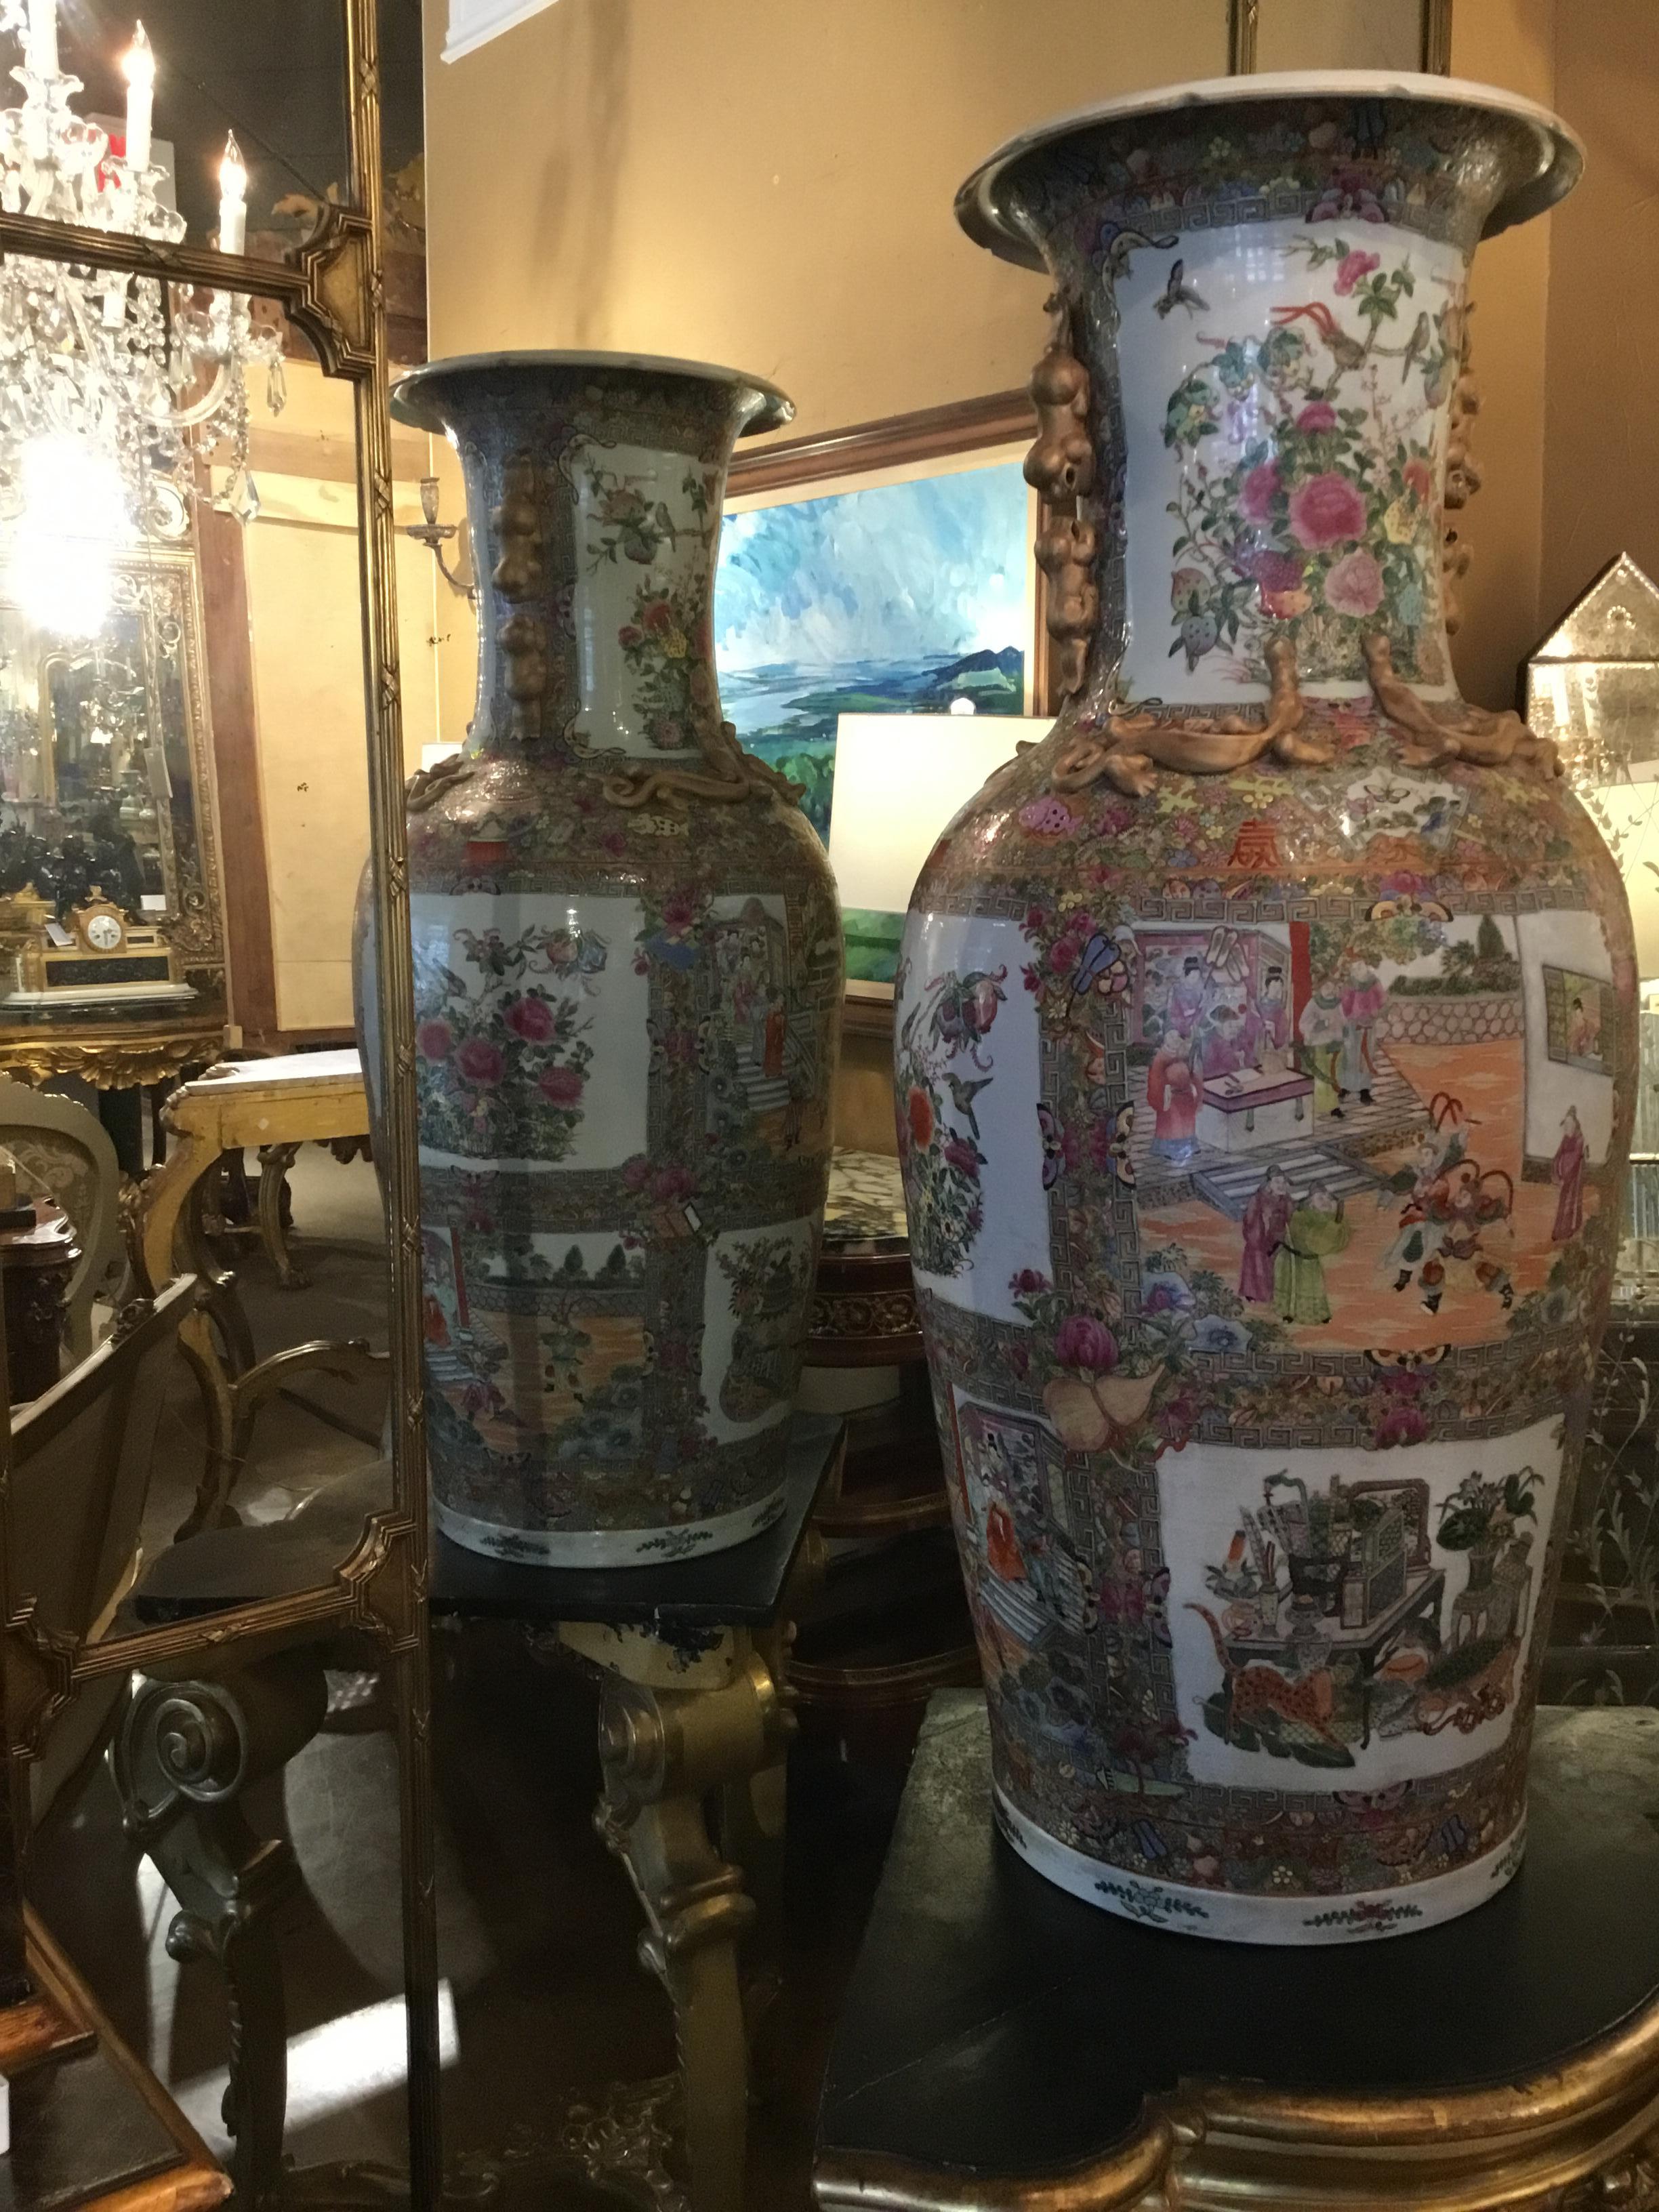 Vasen in Palastgröße aus Porzellan mit Rosenmedaillon. Sehr gut bemalt und in exquisitem Zustand, ohne Reparaturen.